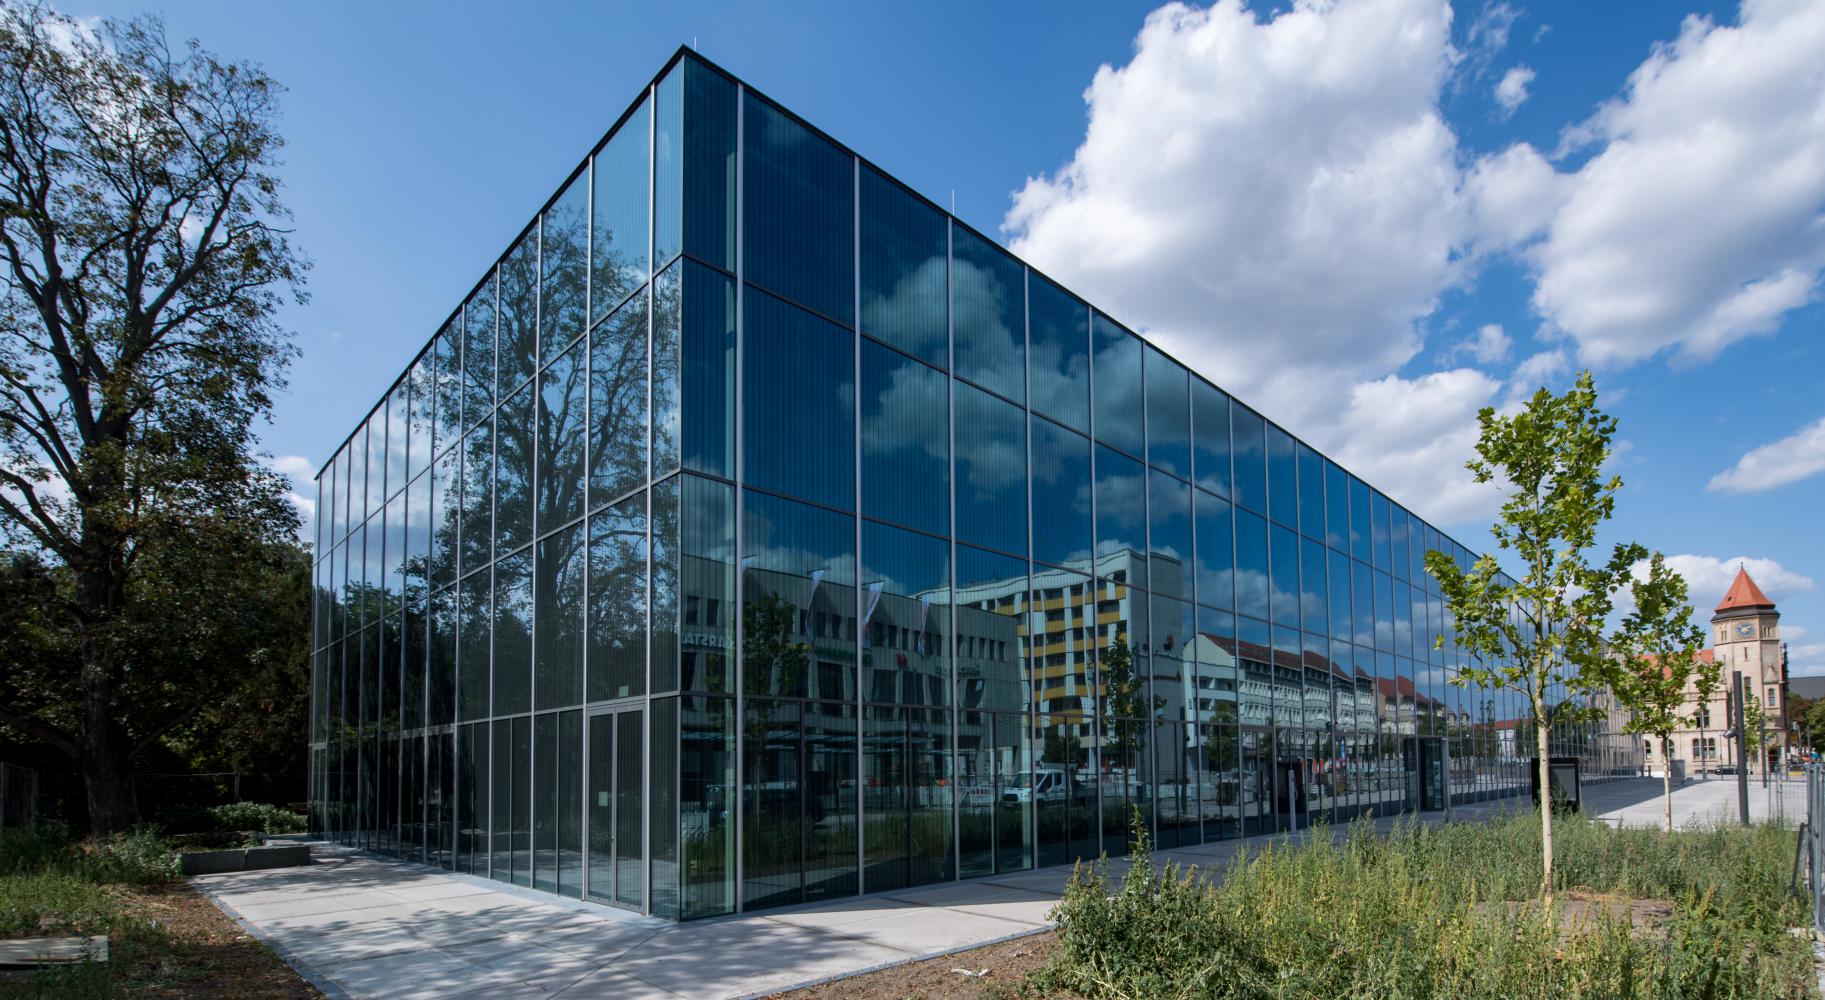 Blick auf das neue Bauhaus Museum Dessau nach einem Entwurf des spanischen Architektenbüros Gonzales Hinz Zabala